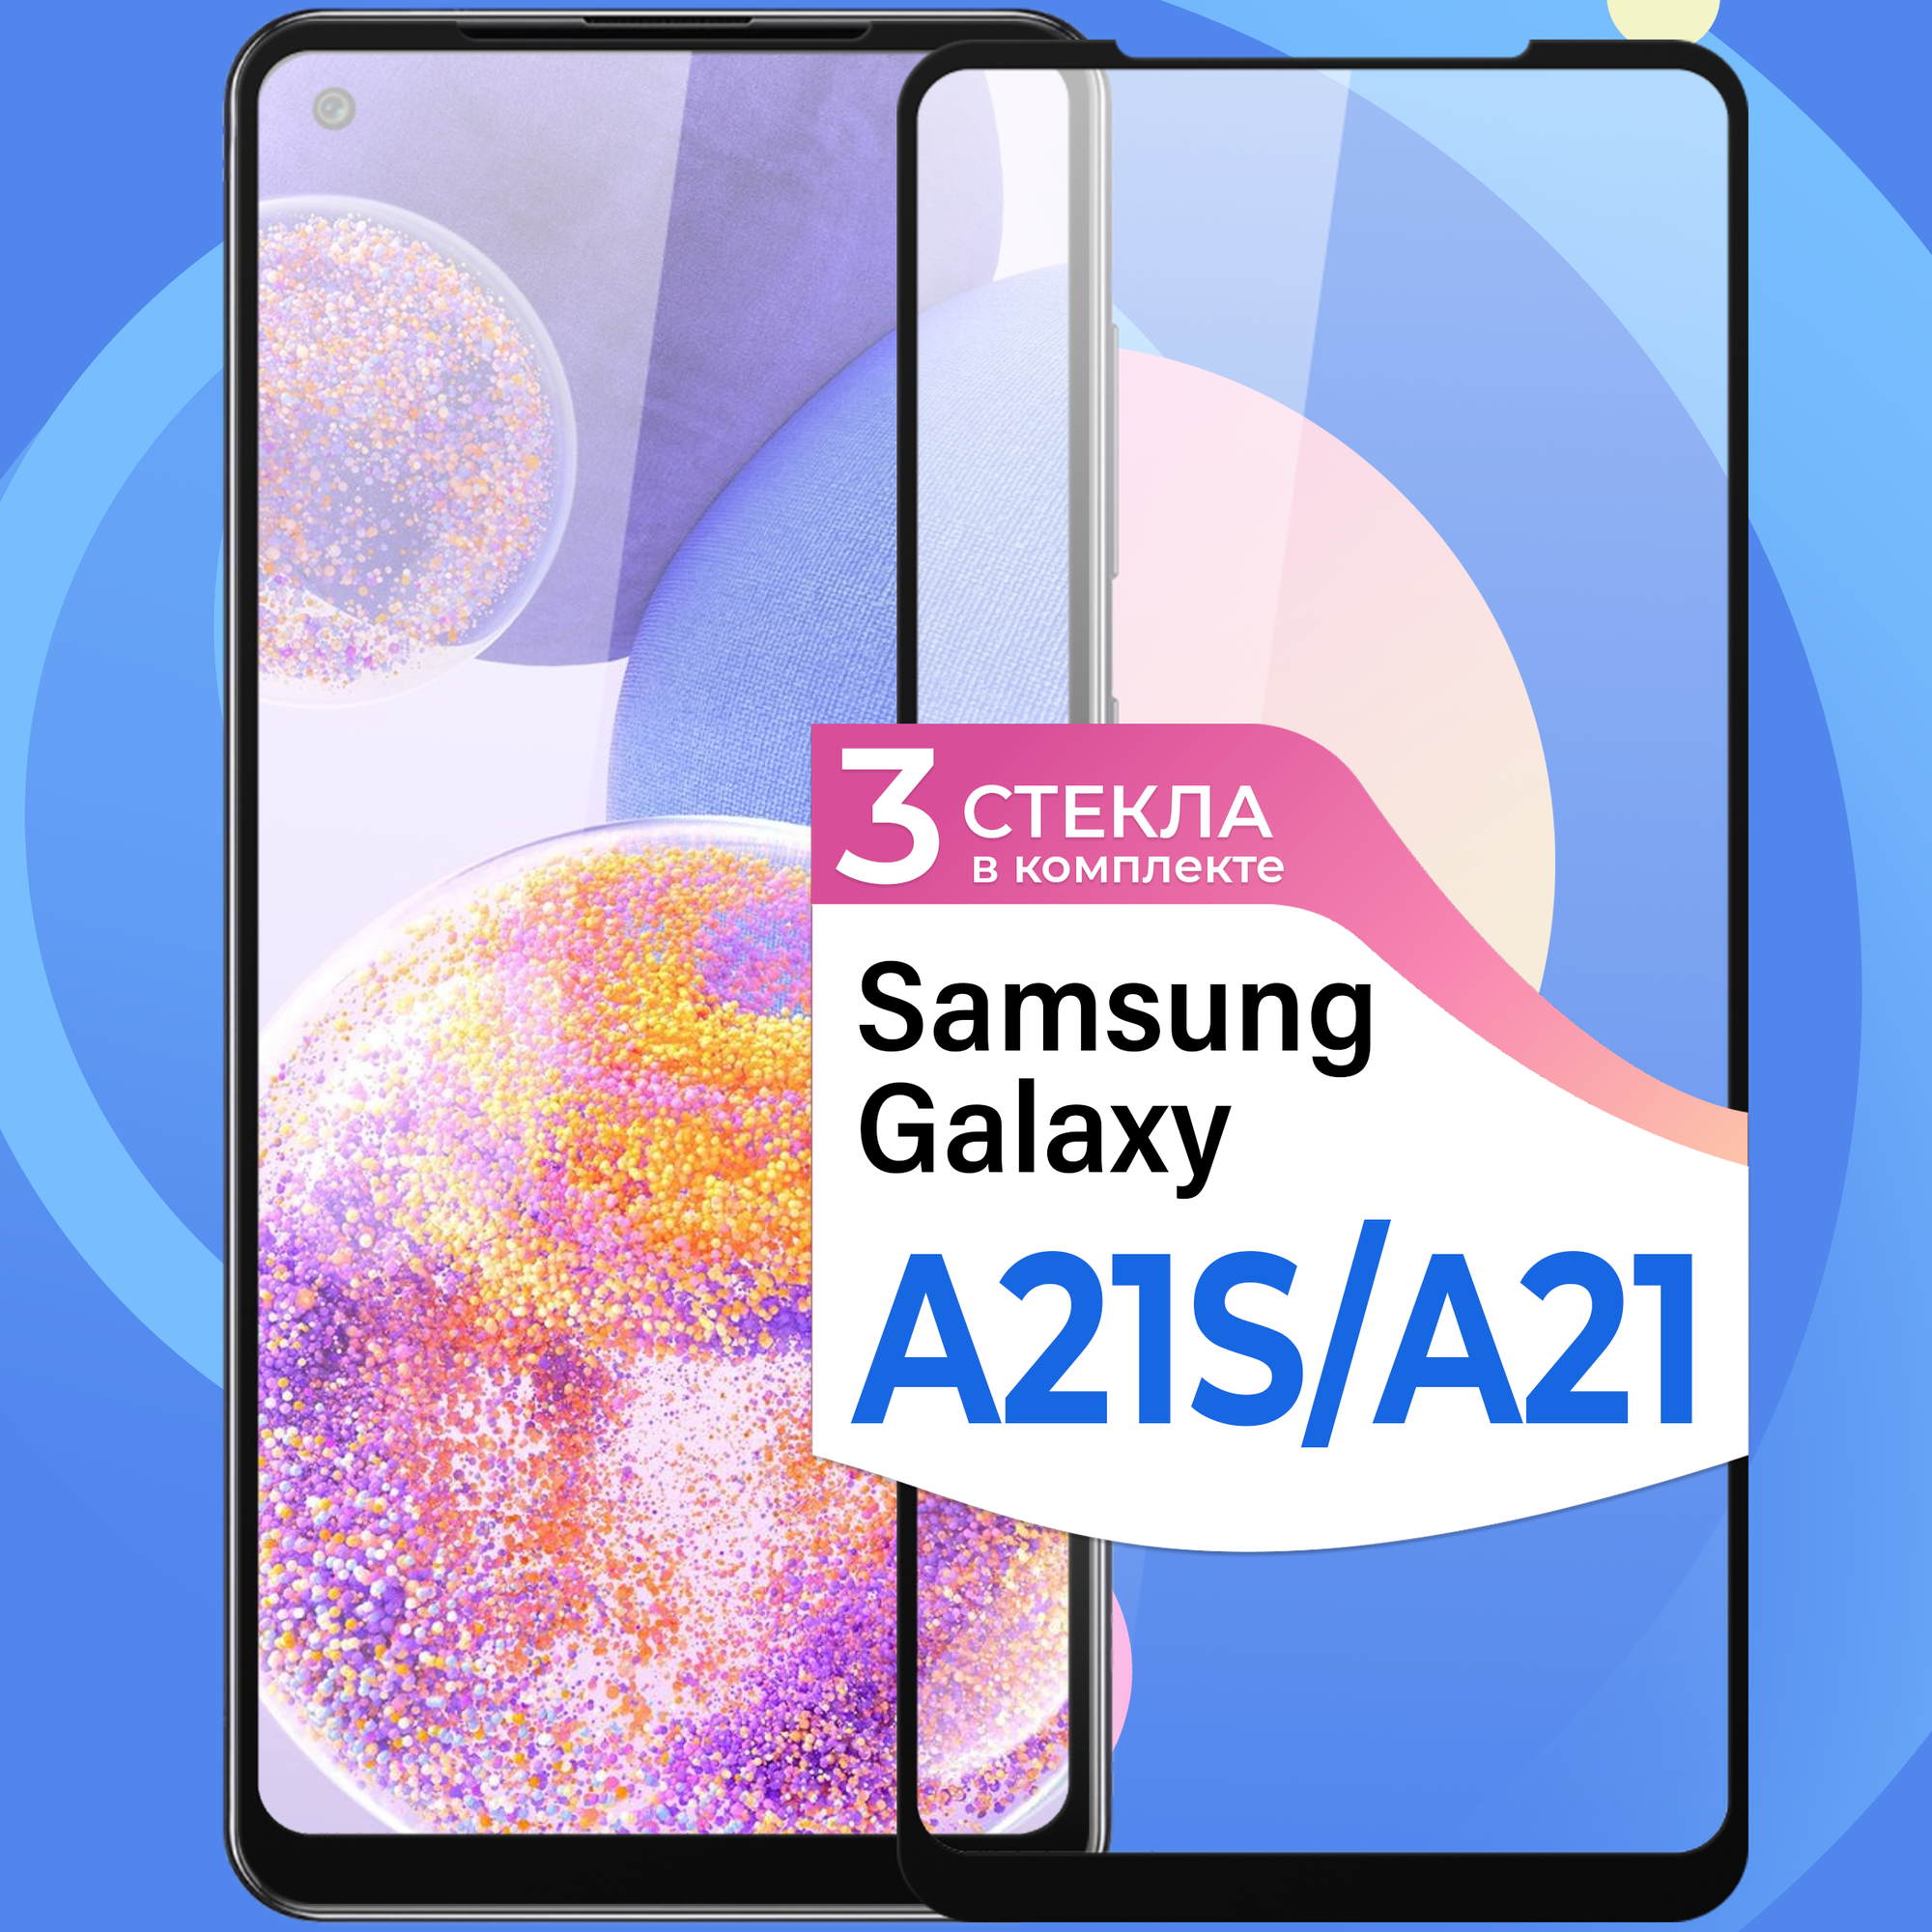 Комплект 3 шт. Защитное стекло на телефон Samsung Galaxy A21S и Galaxy A21 / Противоударное олеофобное стекло для смартфона Самсунг Галакси А21С и Галакси А21